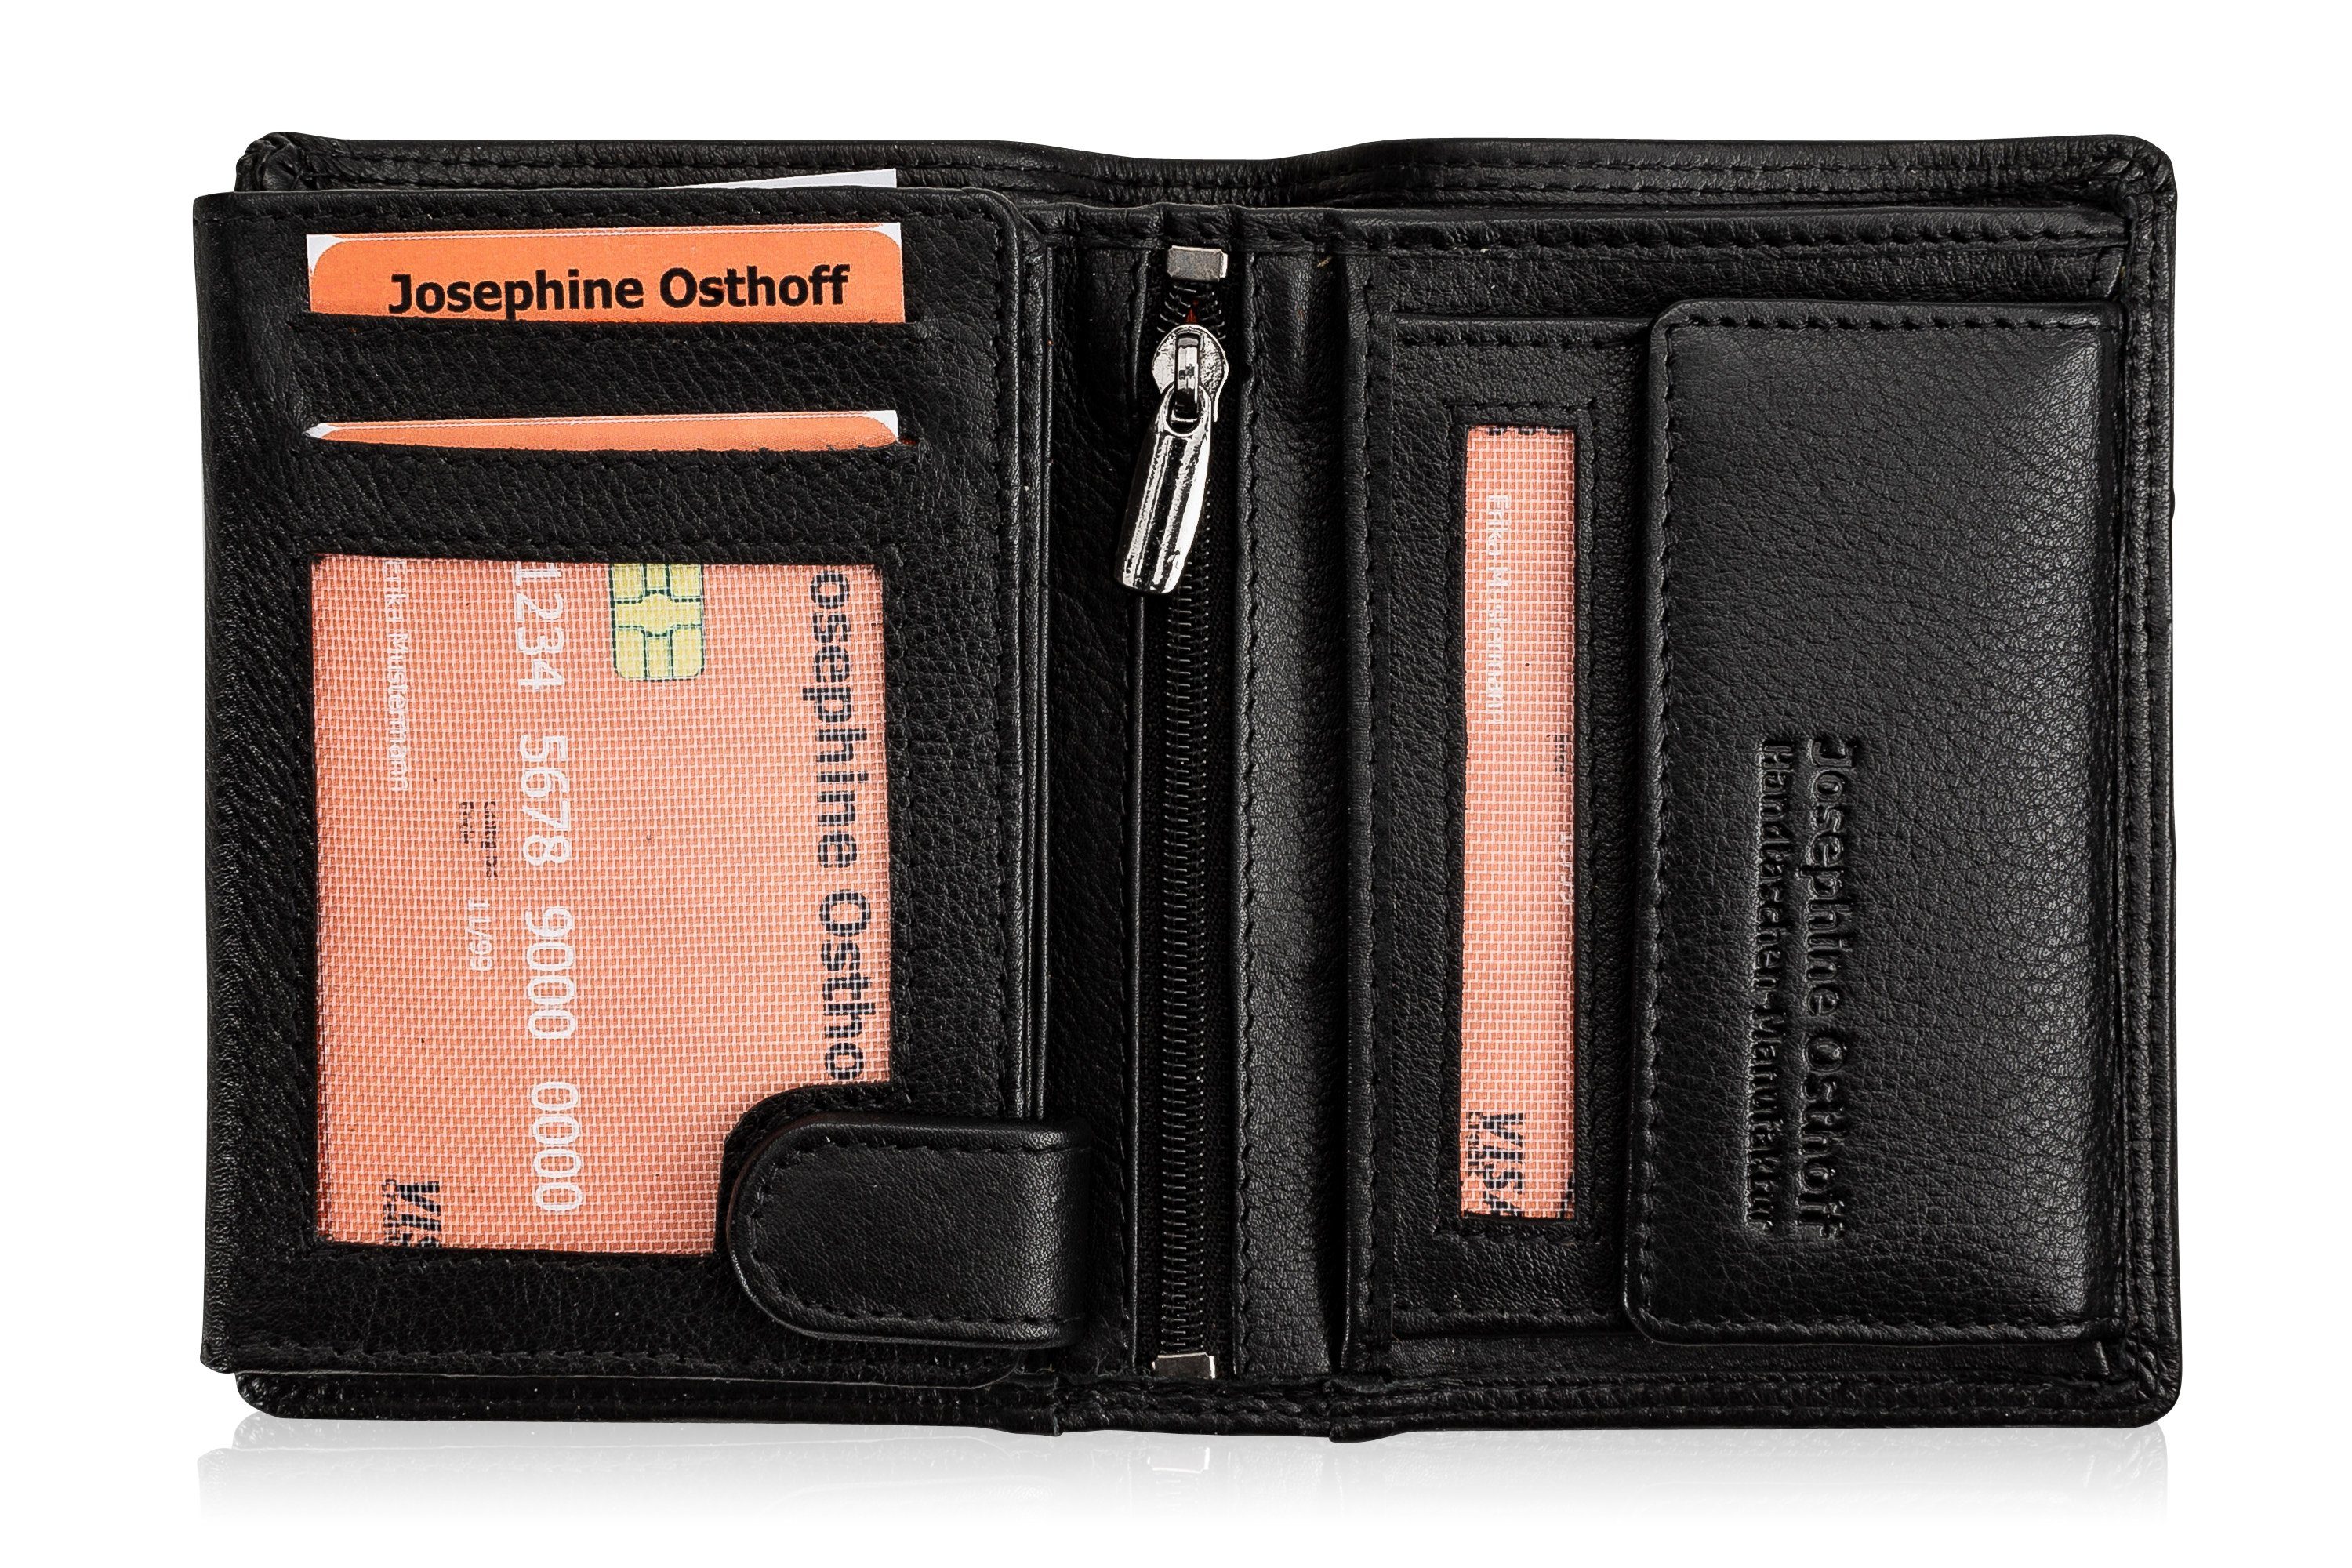 Brieftasche Cash schwarz Geldbörse Osthoff Josephine